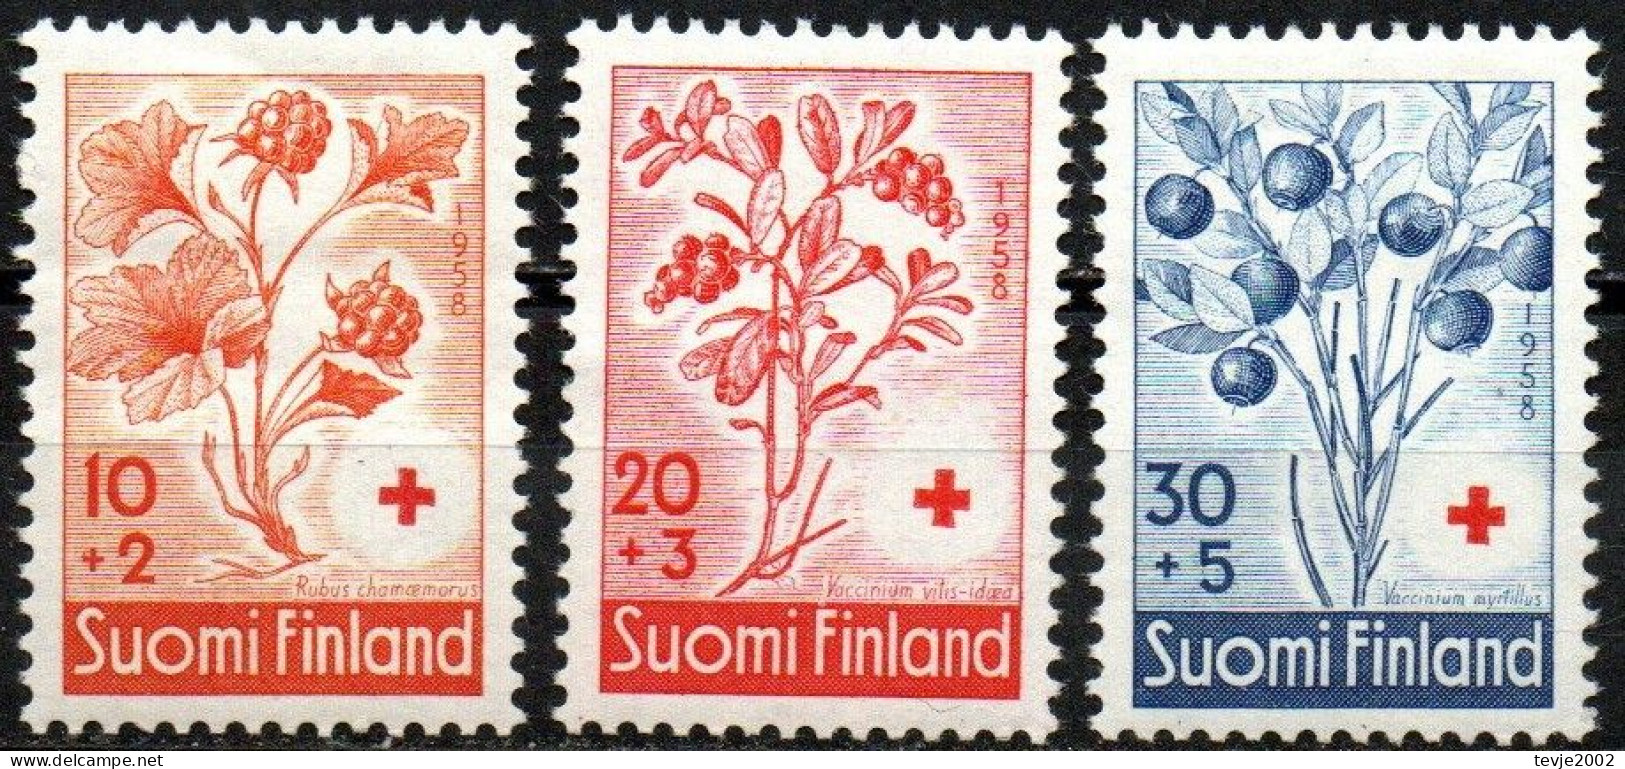 Finnland 1958 - Mi.Nr. 499 - 501 - Postfrisch MNH - Früchte Beeren Berries - Obst & Früchte